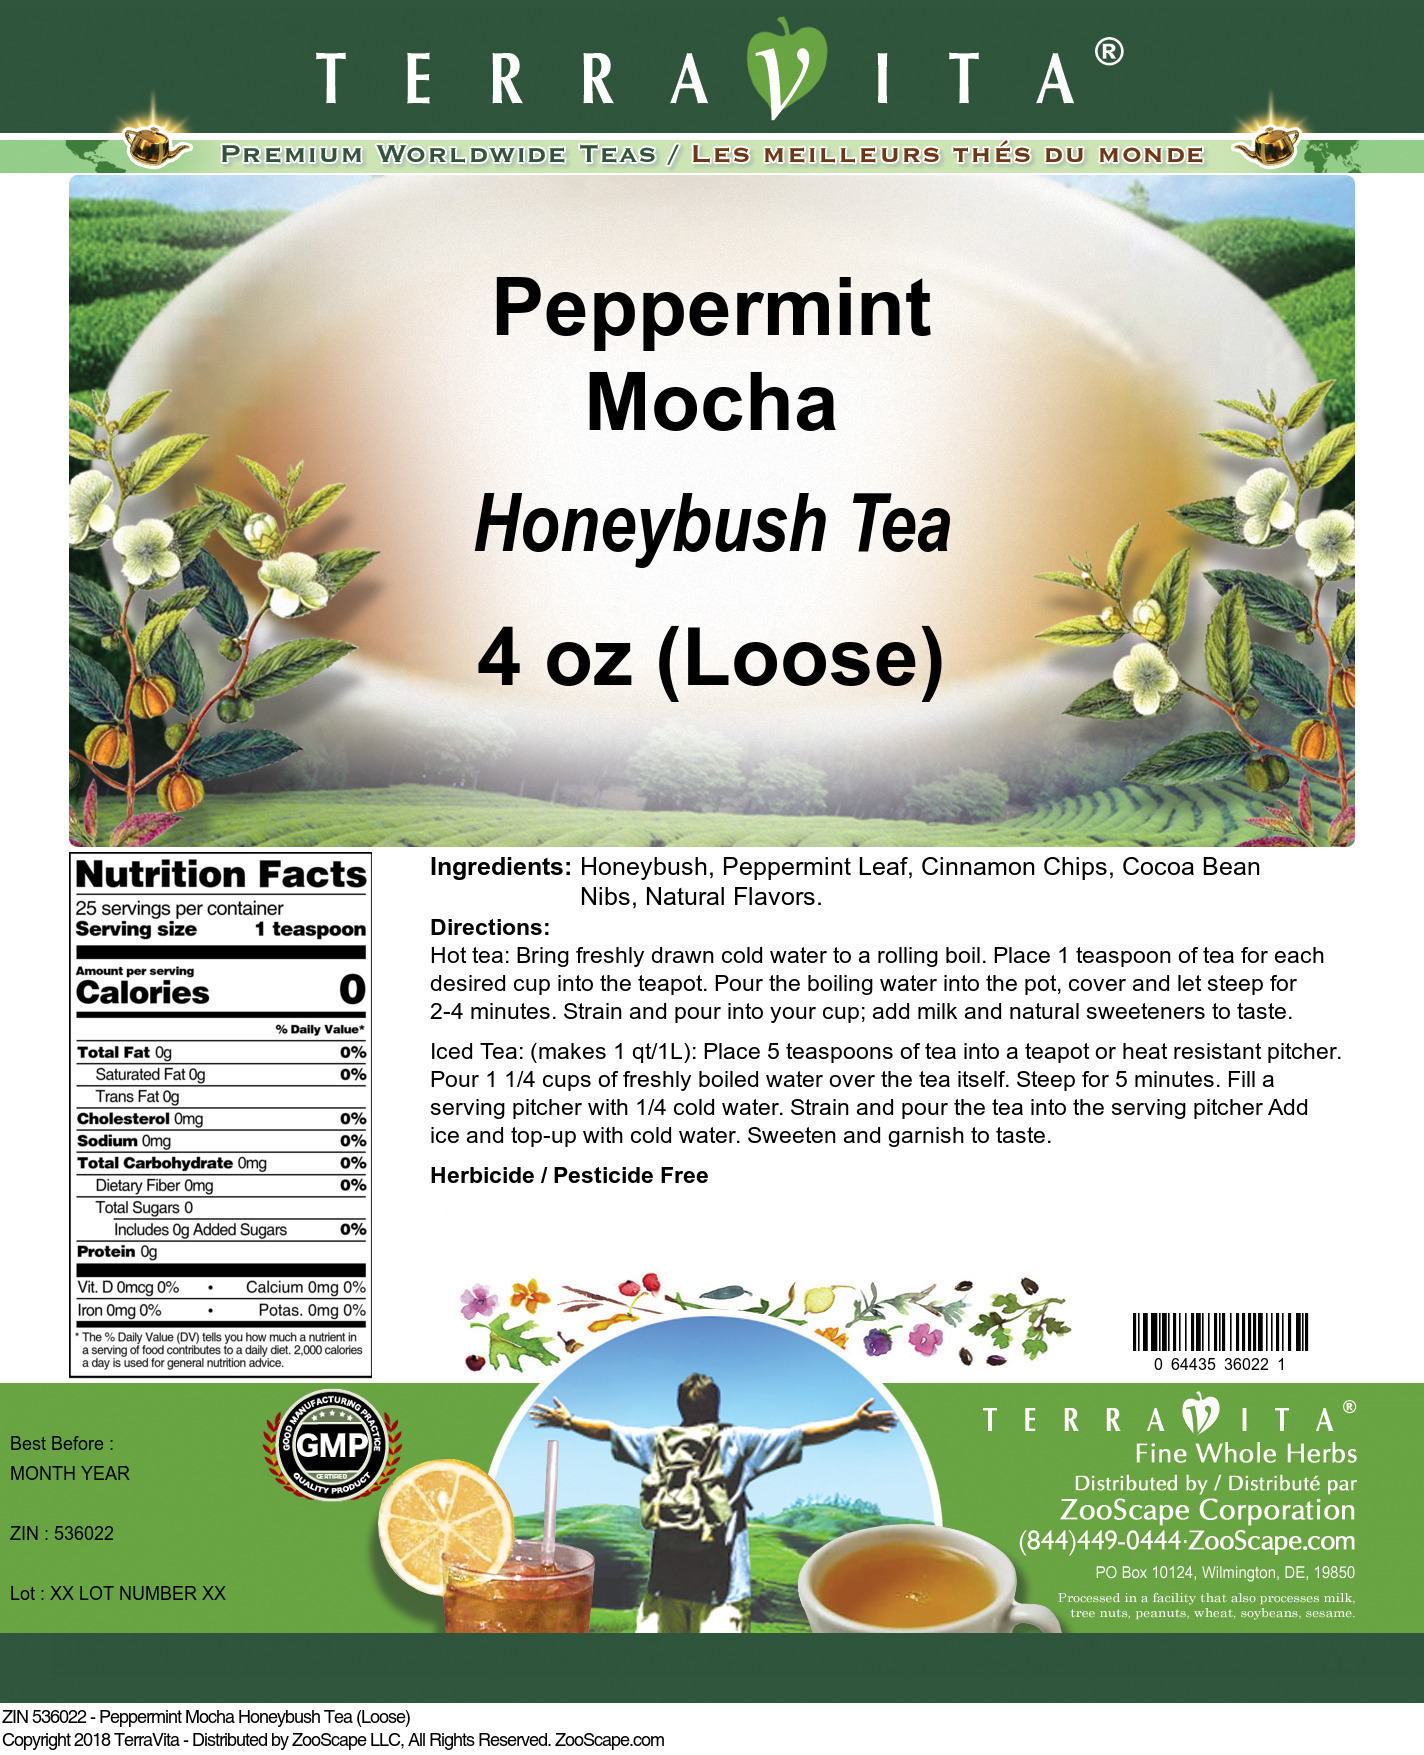 Peppermint Mocha Honeybush Tea (Loose) - Label